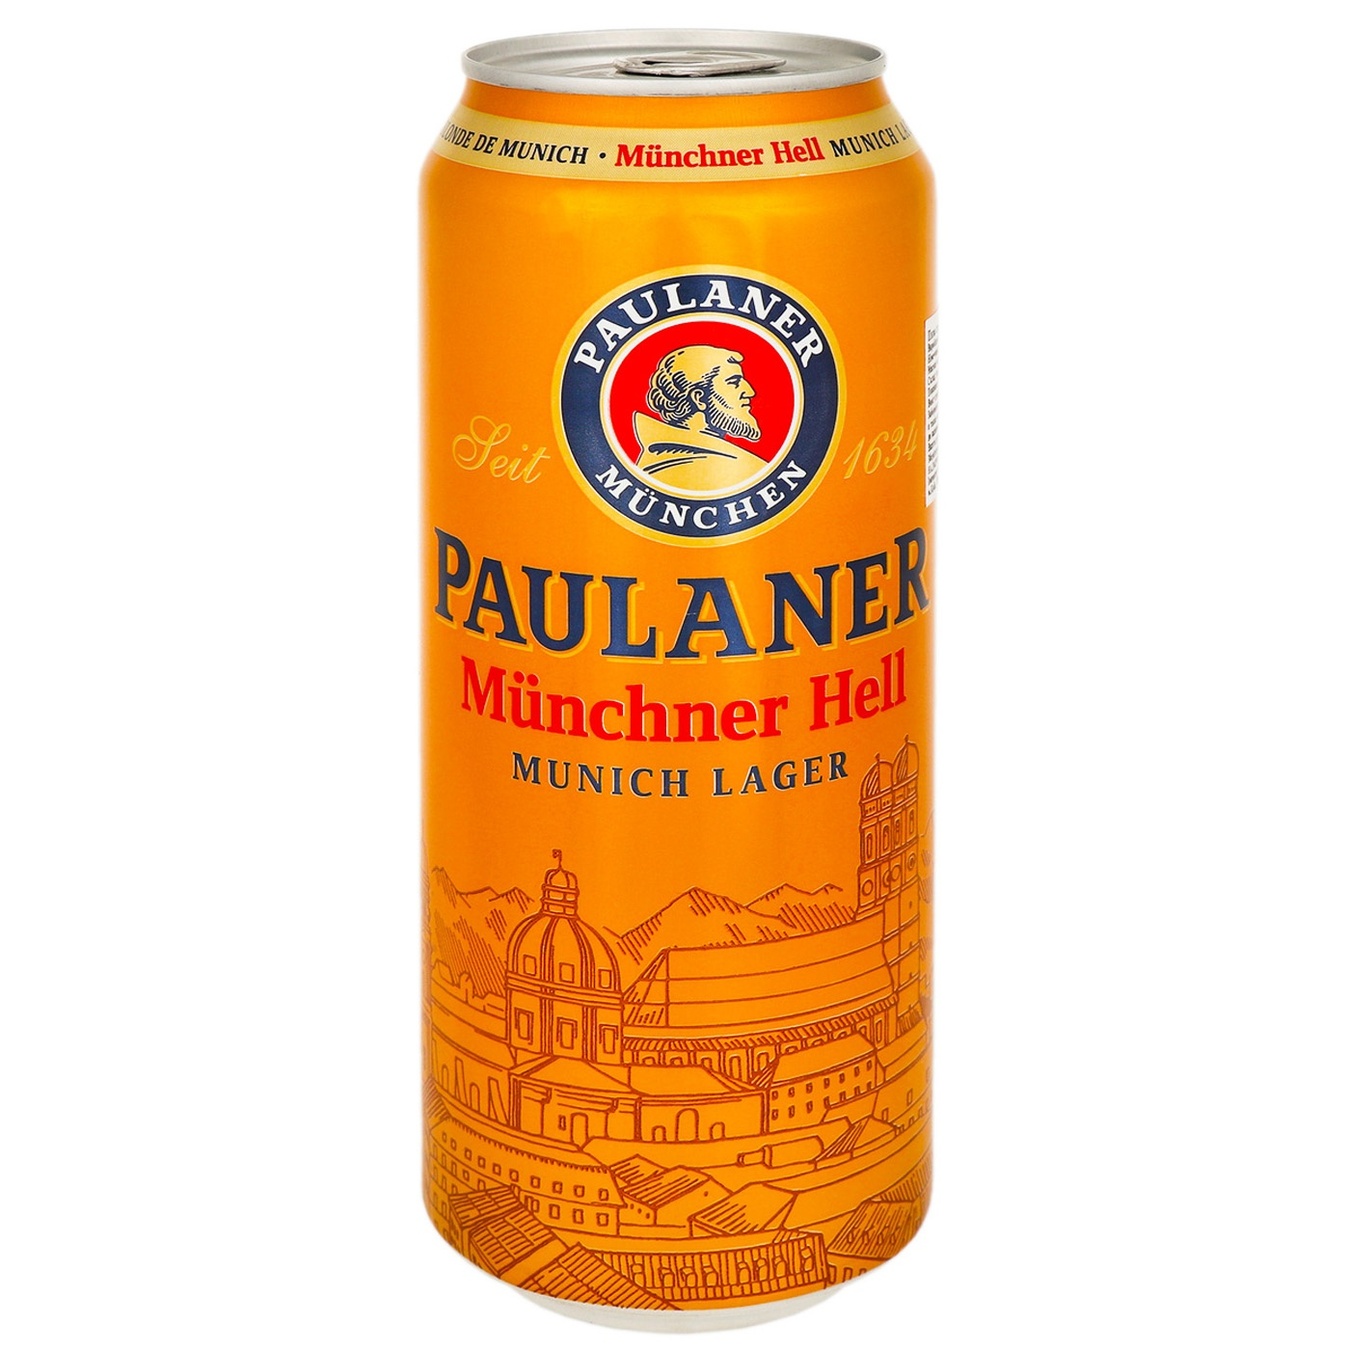 Light beer Paulaner Munchner Hell Lager 5.5% 0.5 l iron can